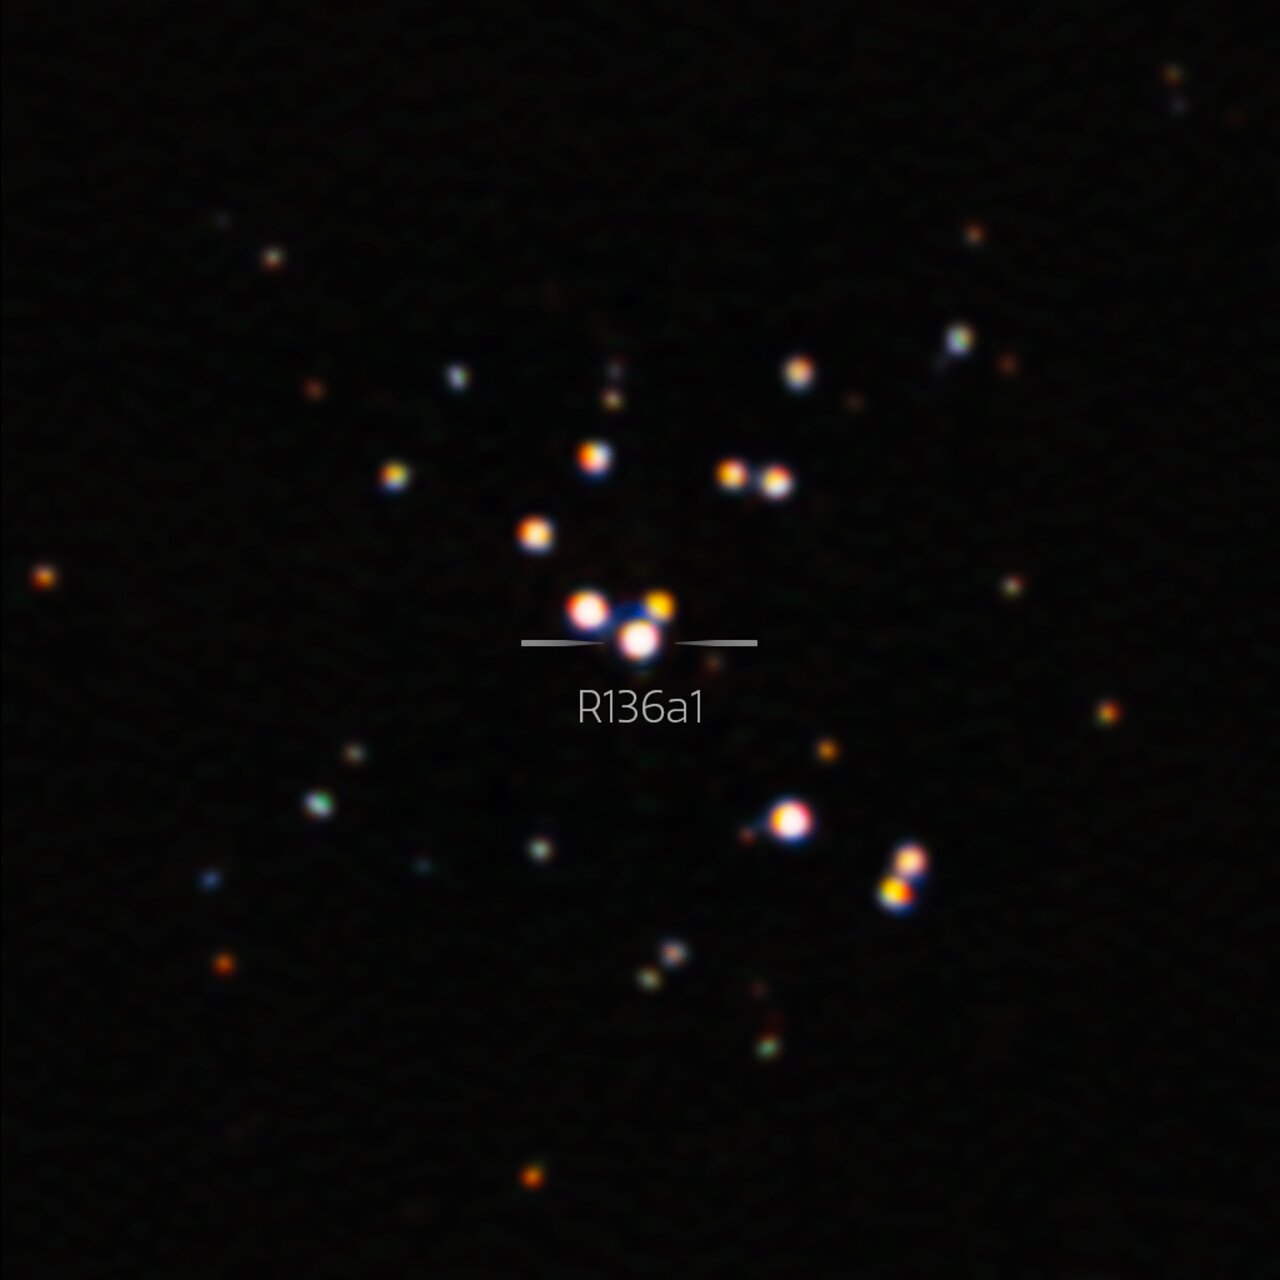 Ovo je najoštrija slika R136a1, najveće poznate zvijezde. Izvor: International Gemini Observatory/NOIRLab/NSF/AURA.